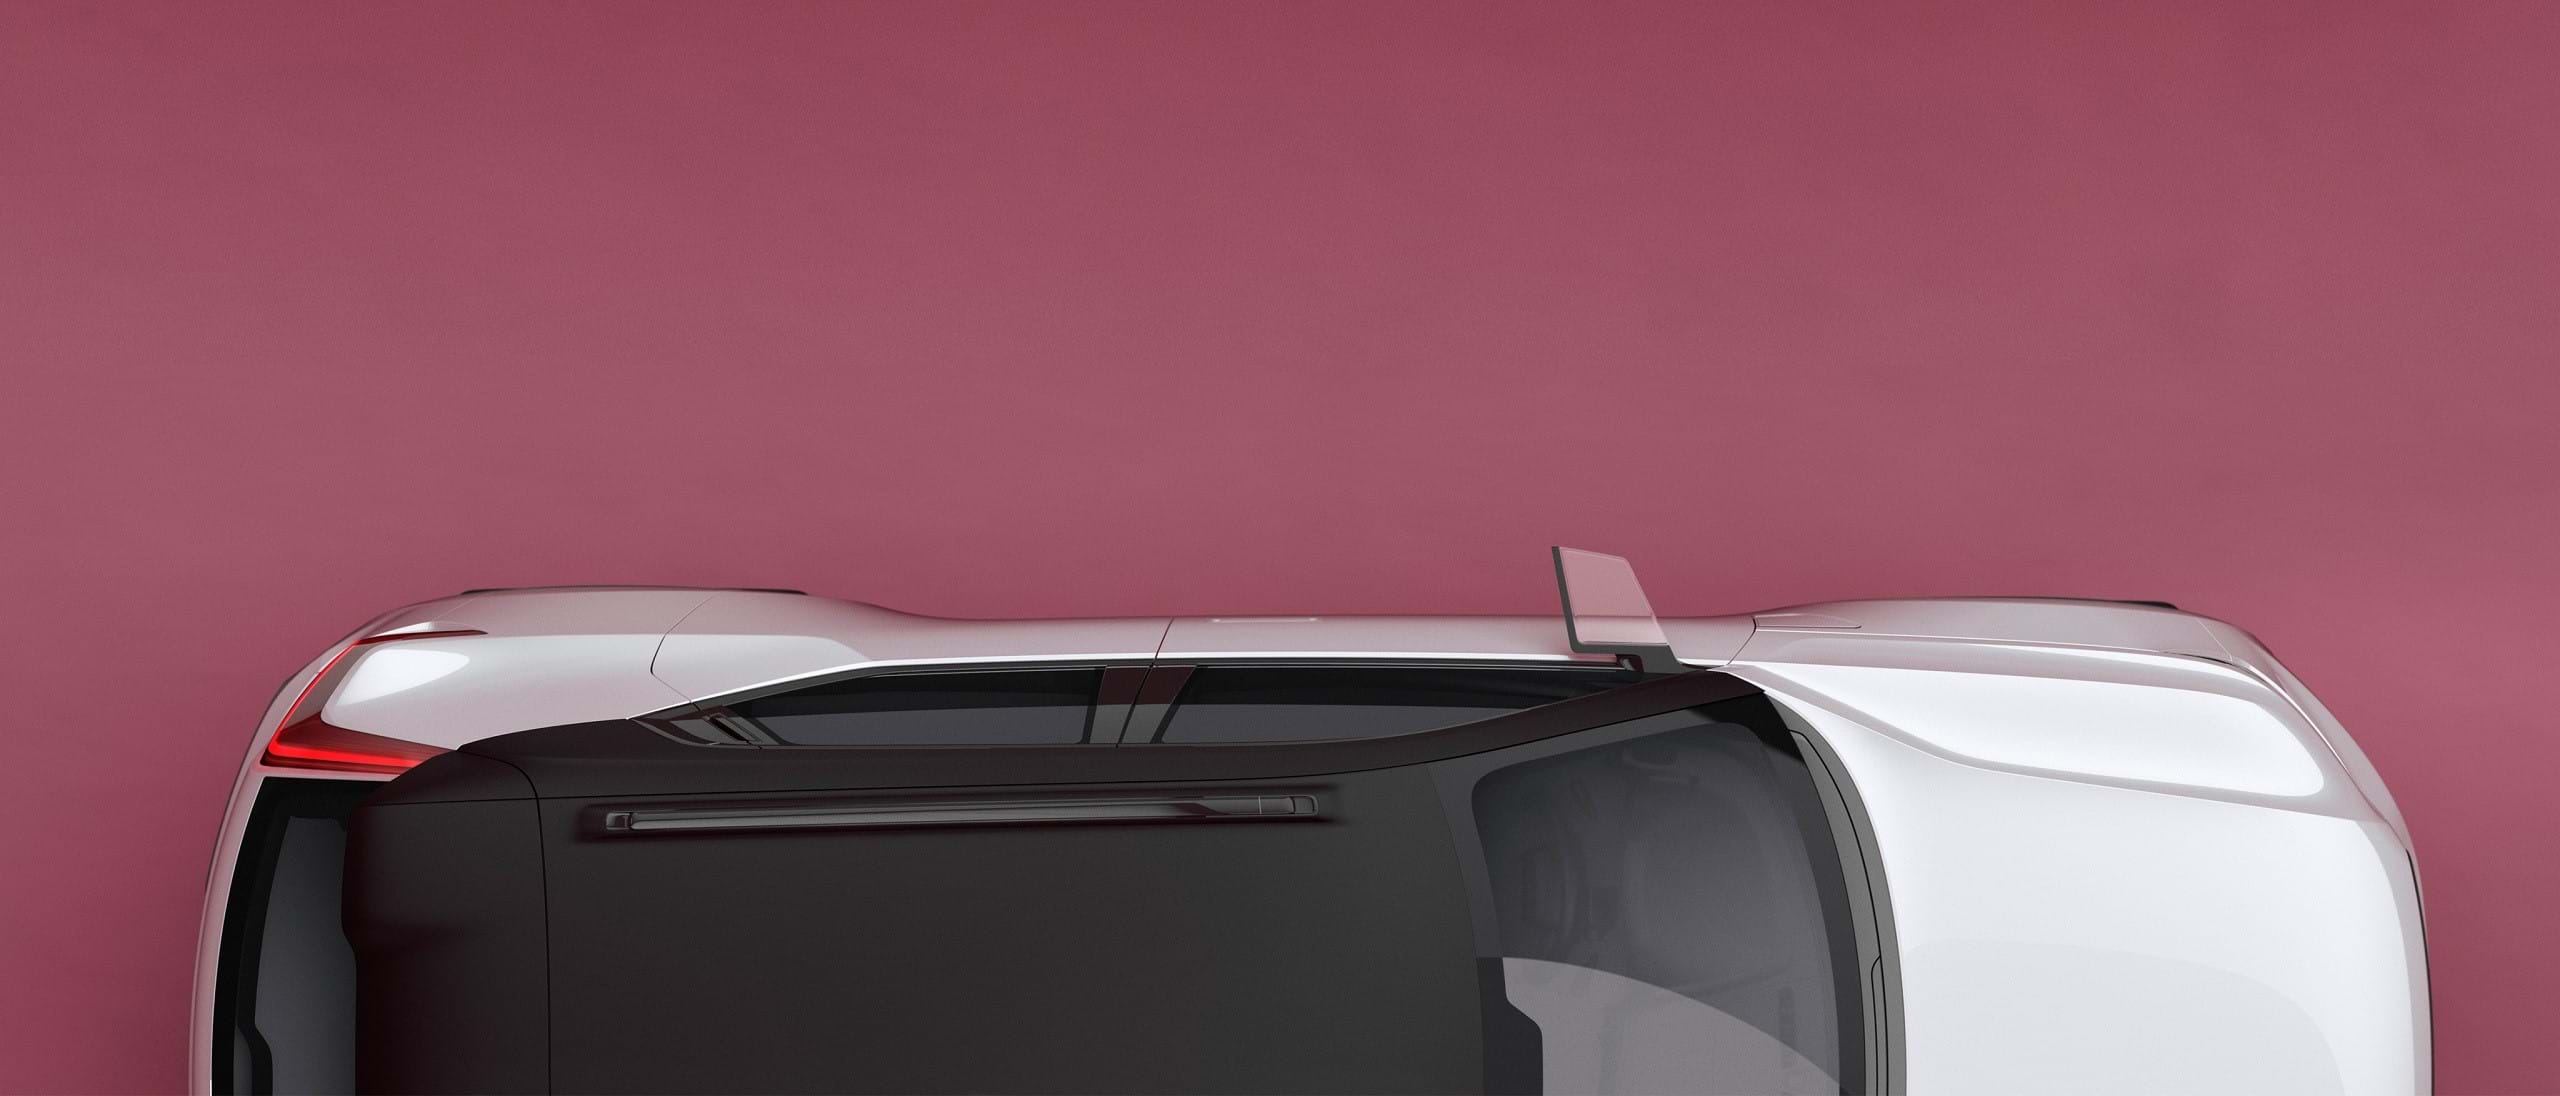 صورة من الأعلى لفولفو Concept 40 بيضاء بسقف أسود متباين